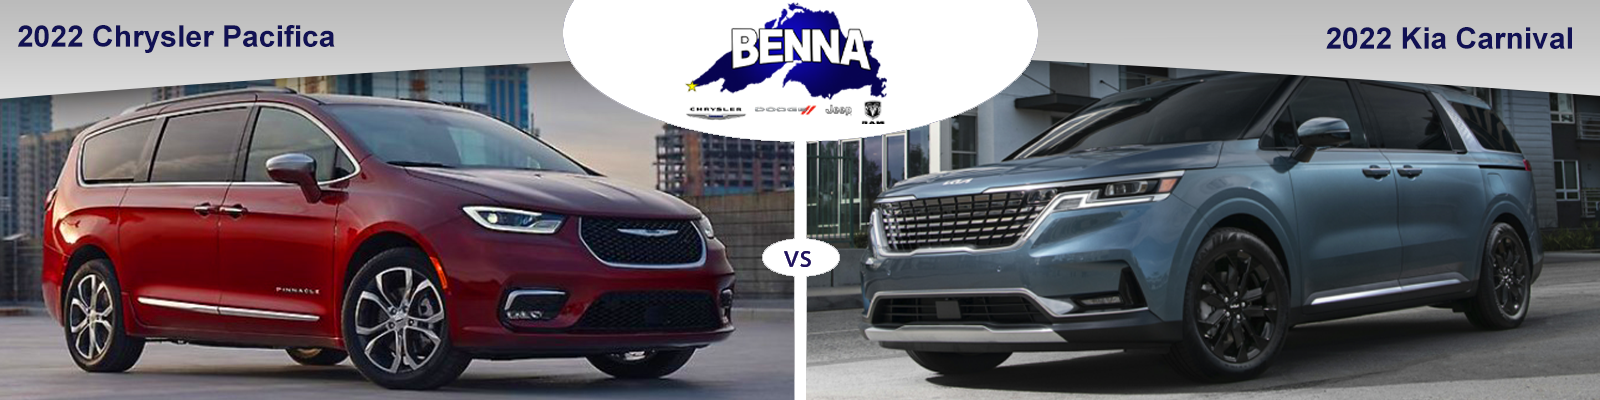 Chrysler Pacifica vs Kia Carnival Benna CDJR